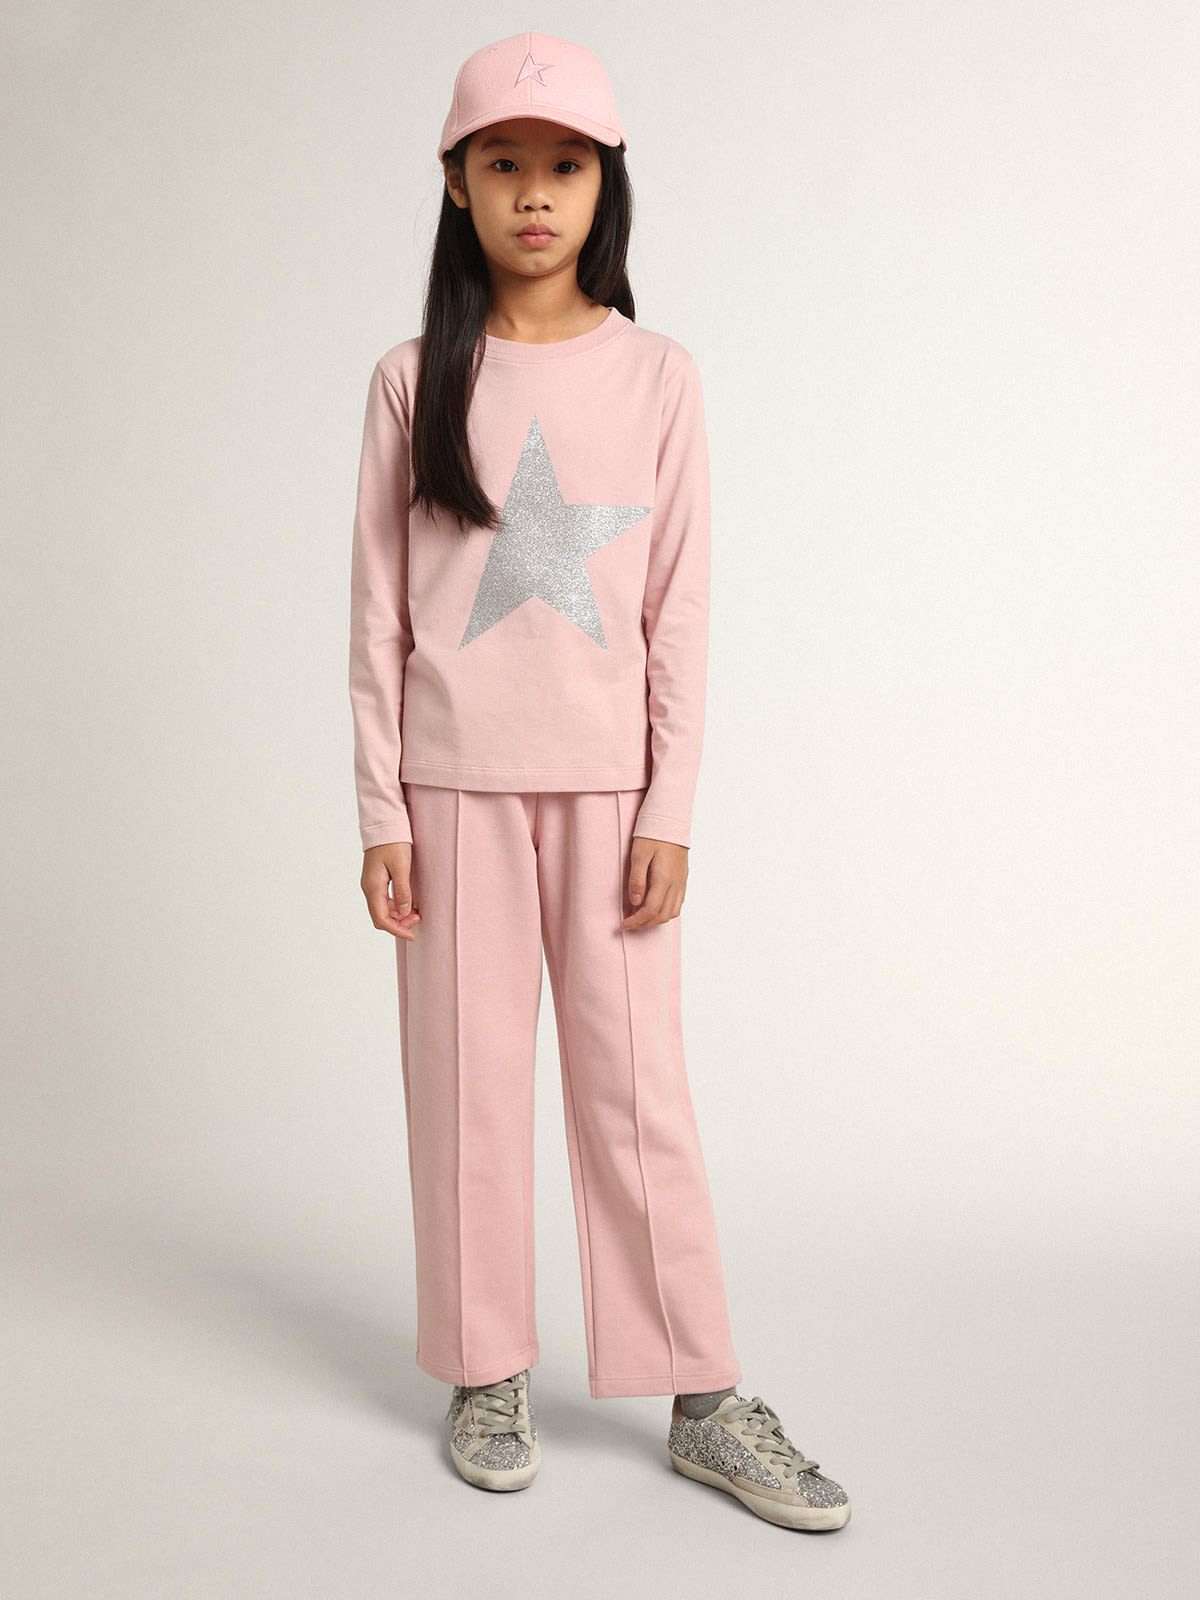 Golden Goose - Pantalón jogger rosa de la colección Star con estrella de purpurina color plateado en el delantero in 